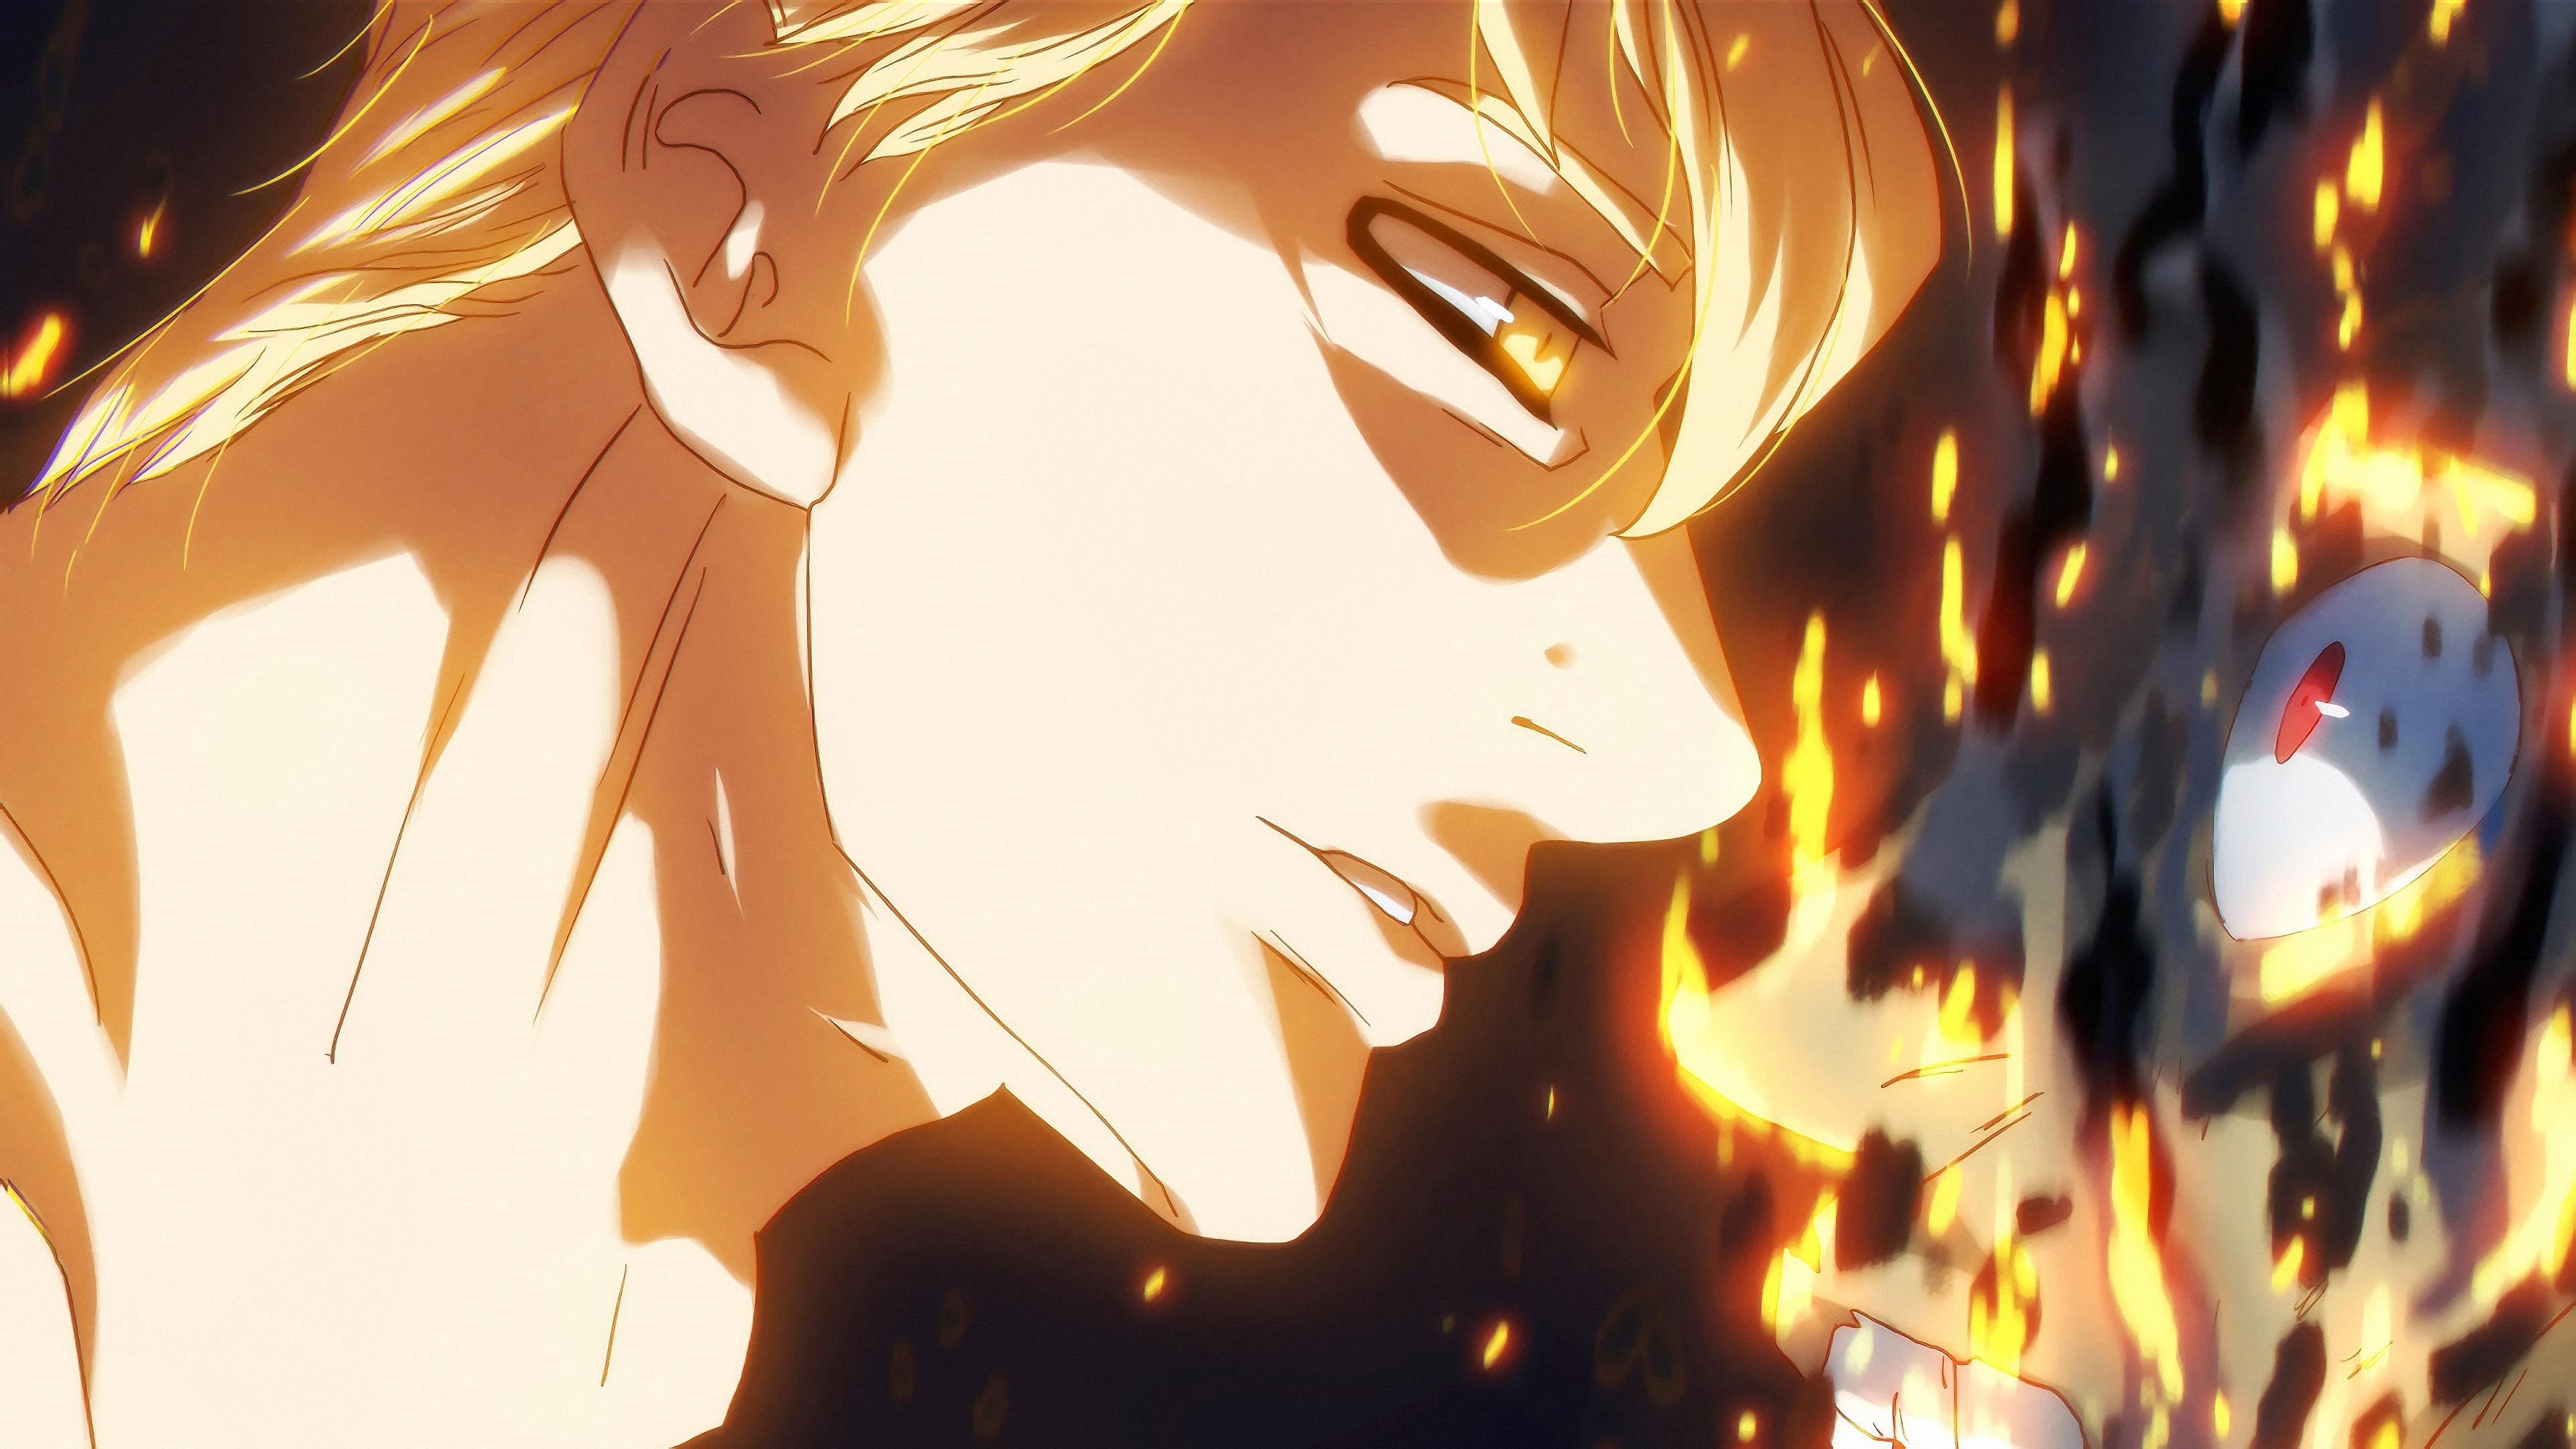 Escanor Nanatsu No Taizai Seven Deadly Sins Anime Boys Anime Anime Men Vampire Anime Burning Fire 3840x2160